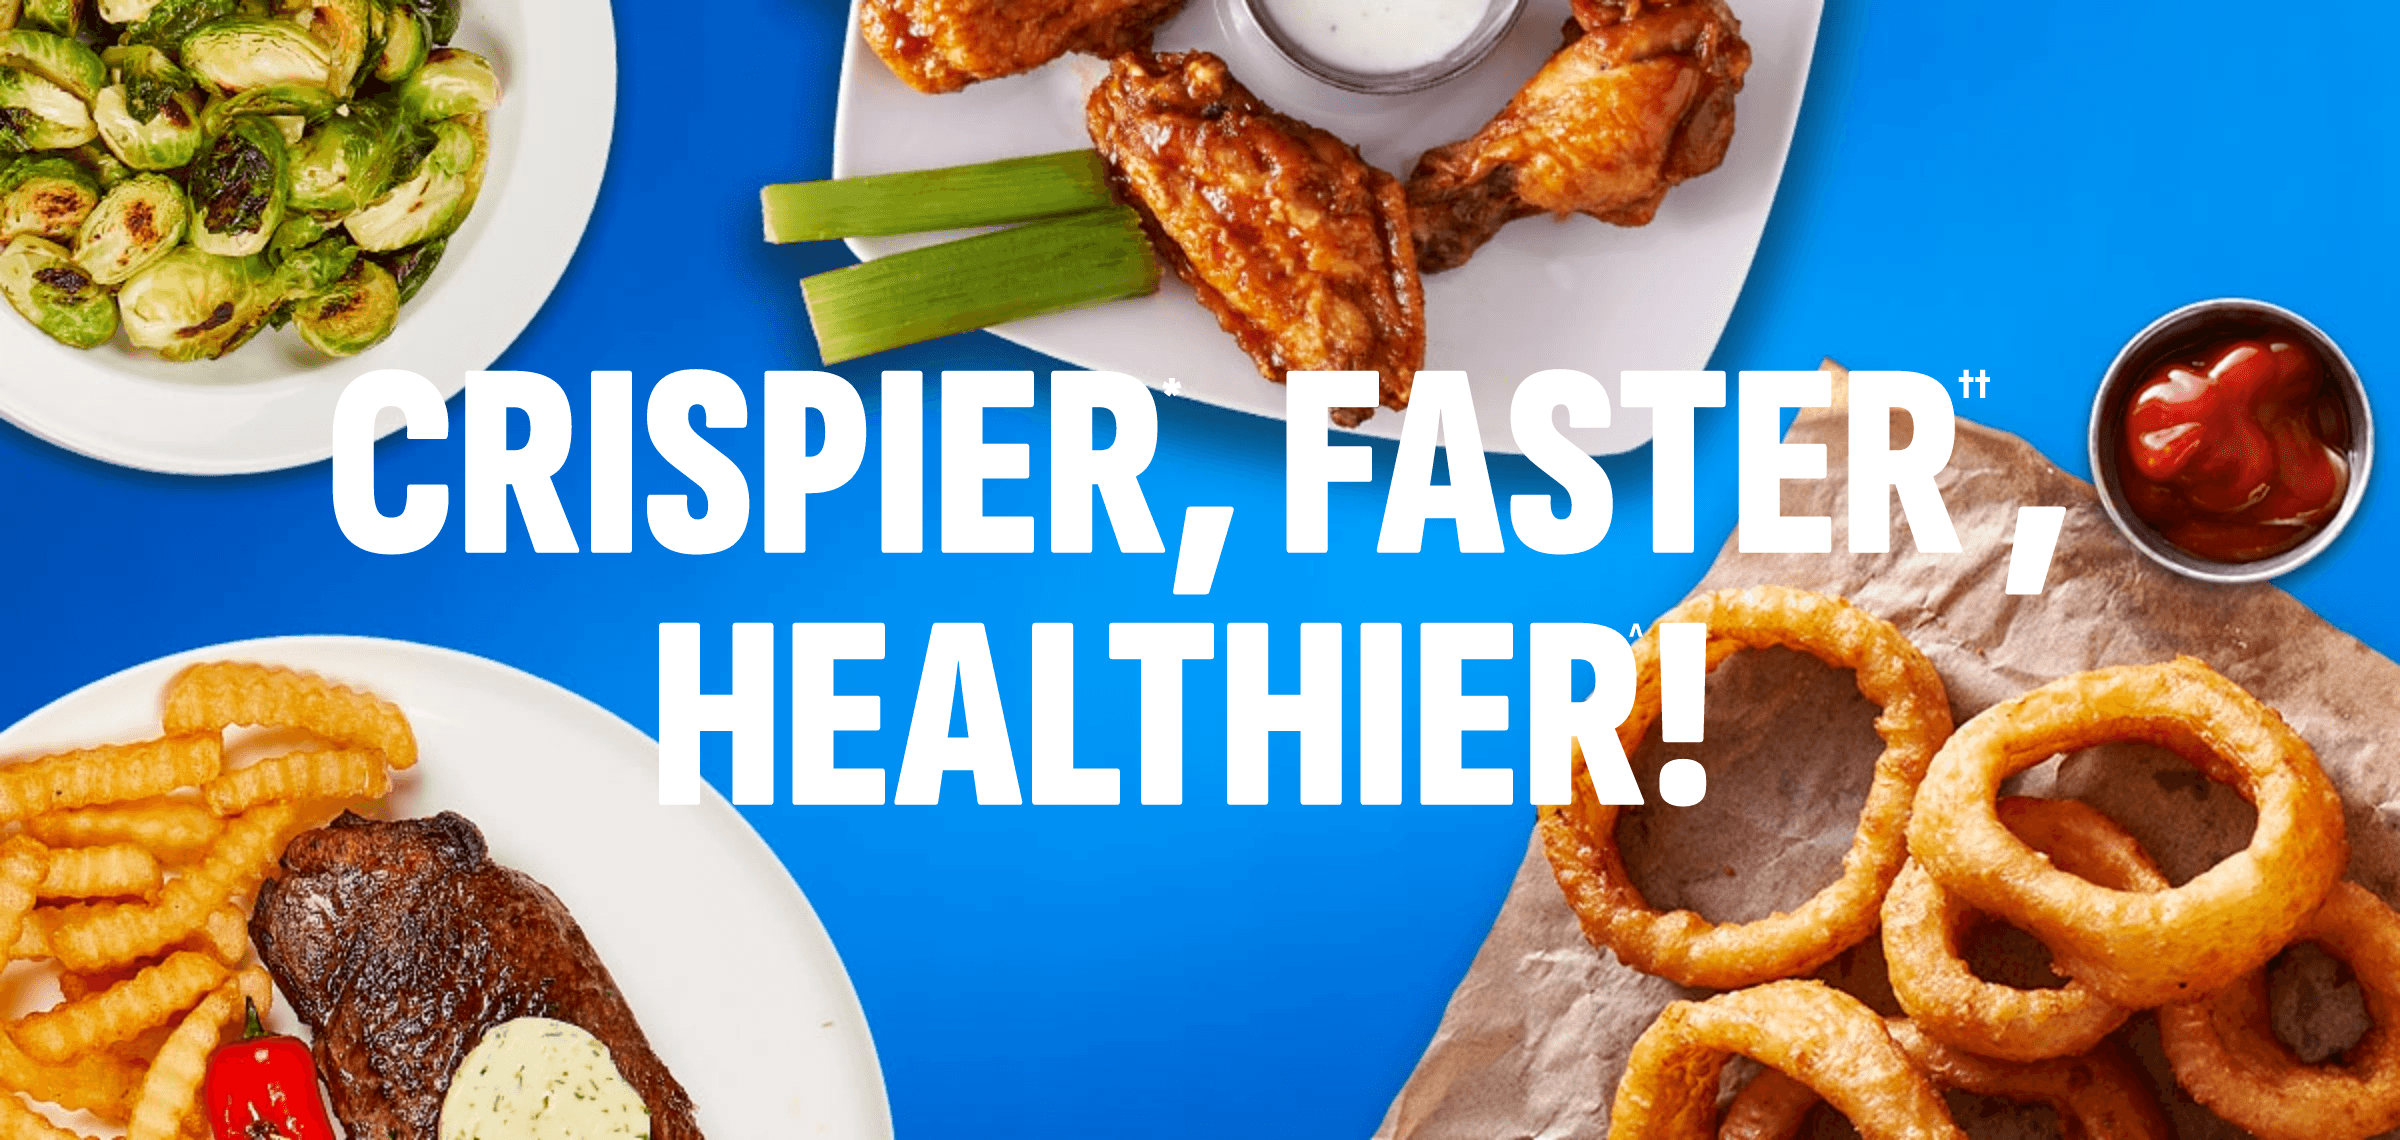 Crispier, Faster, Healthier!